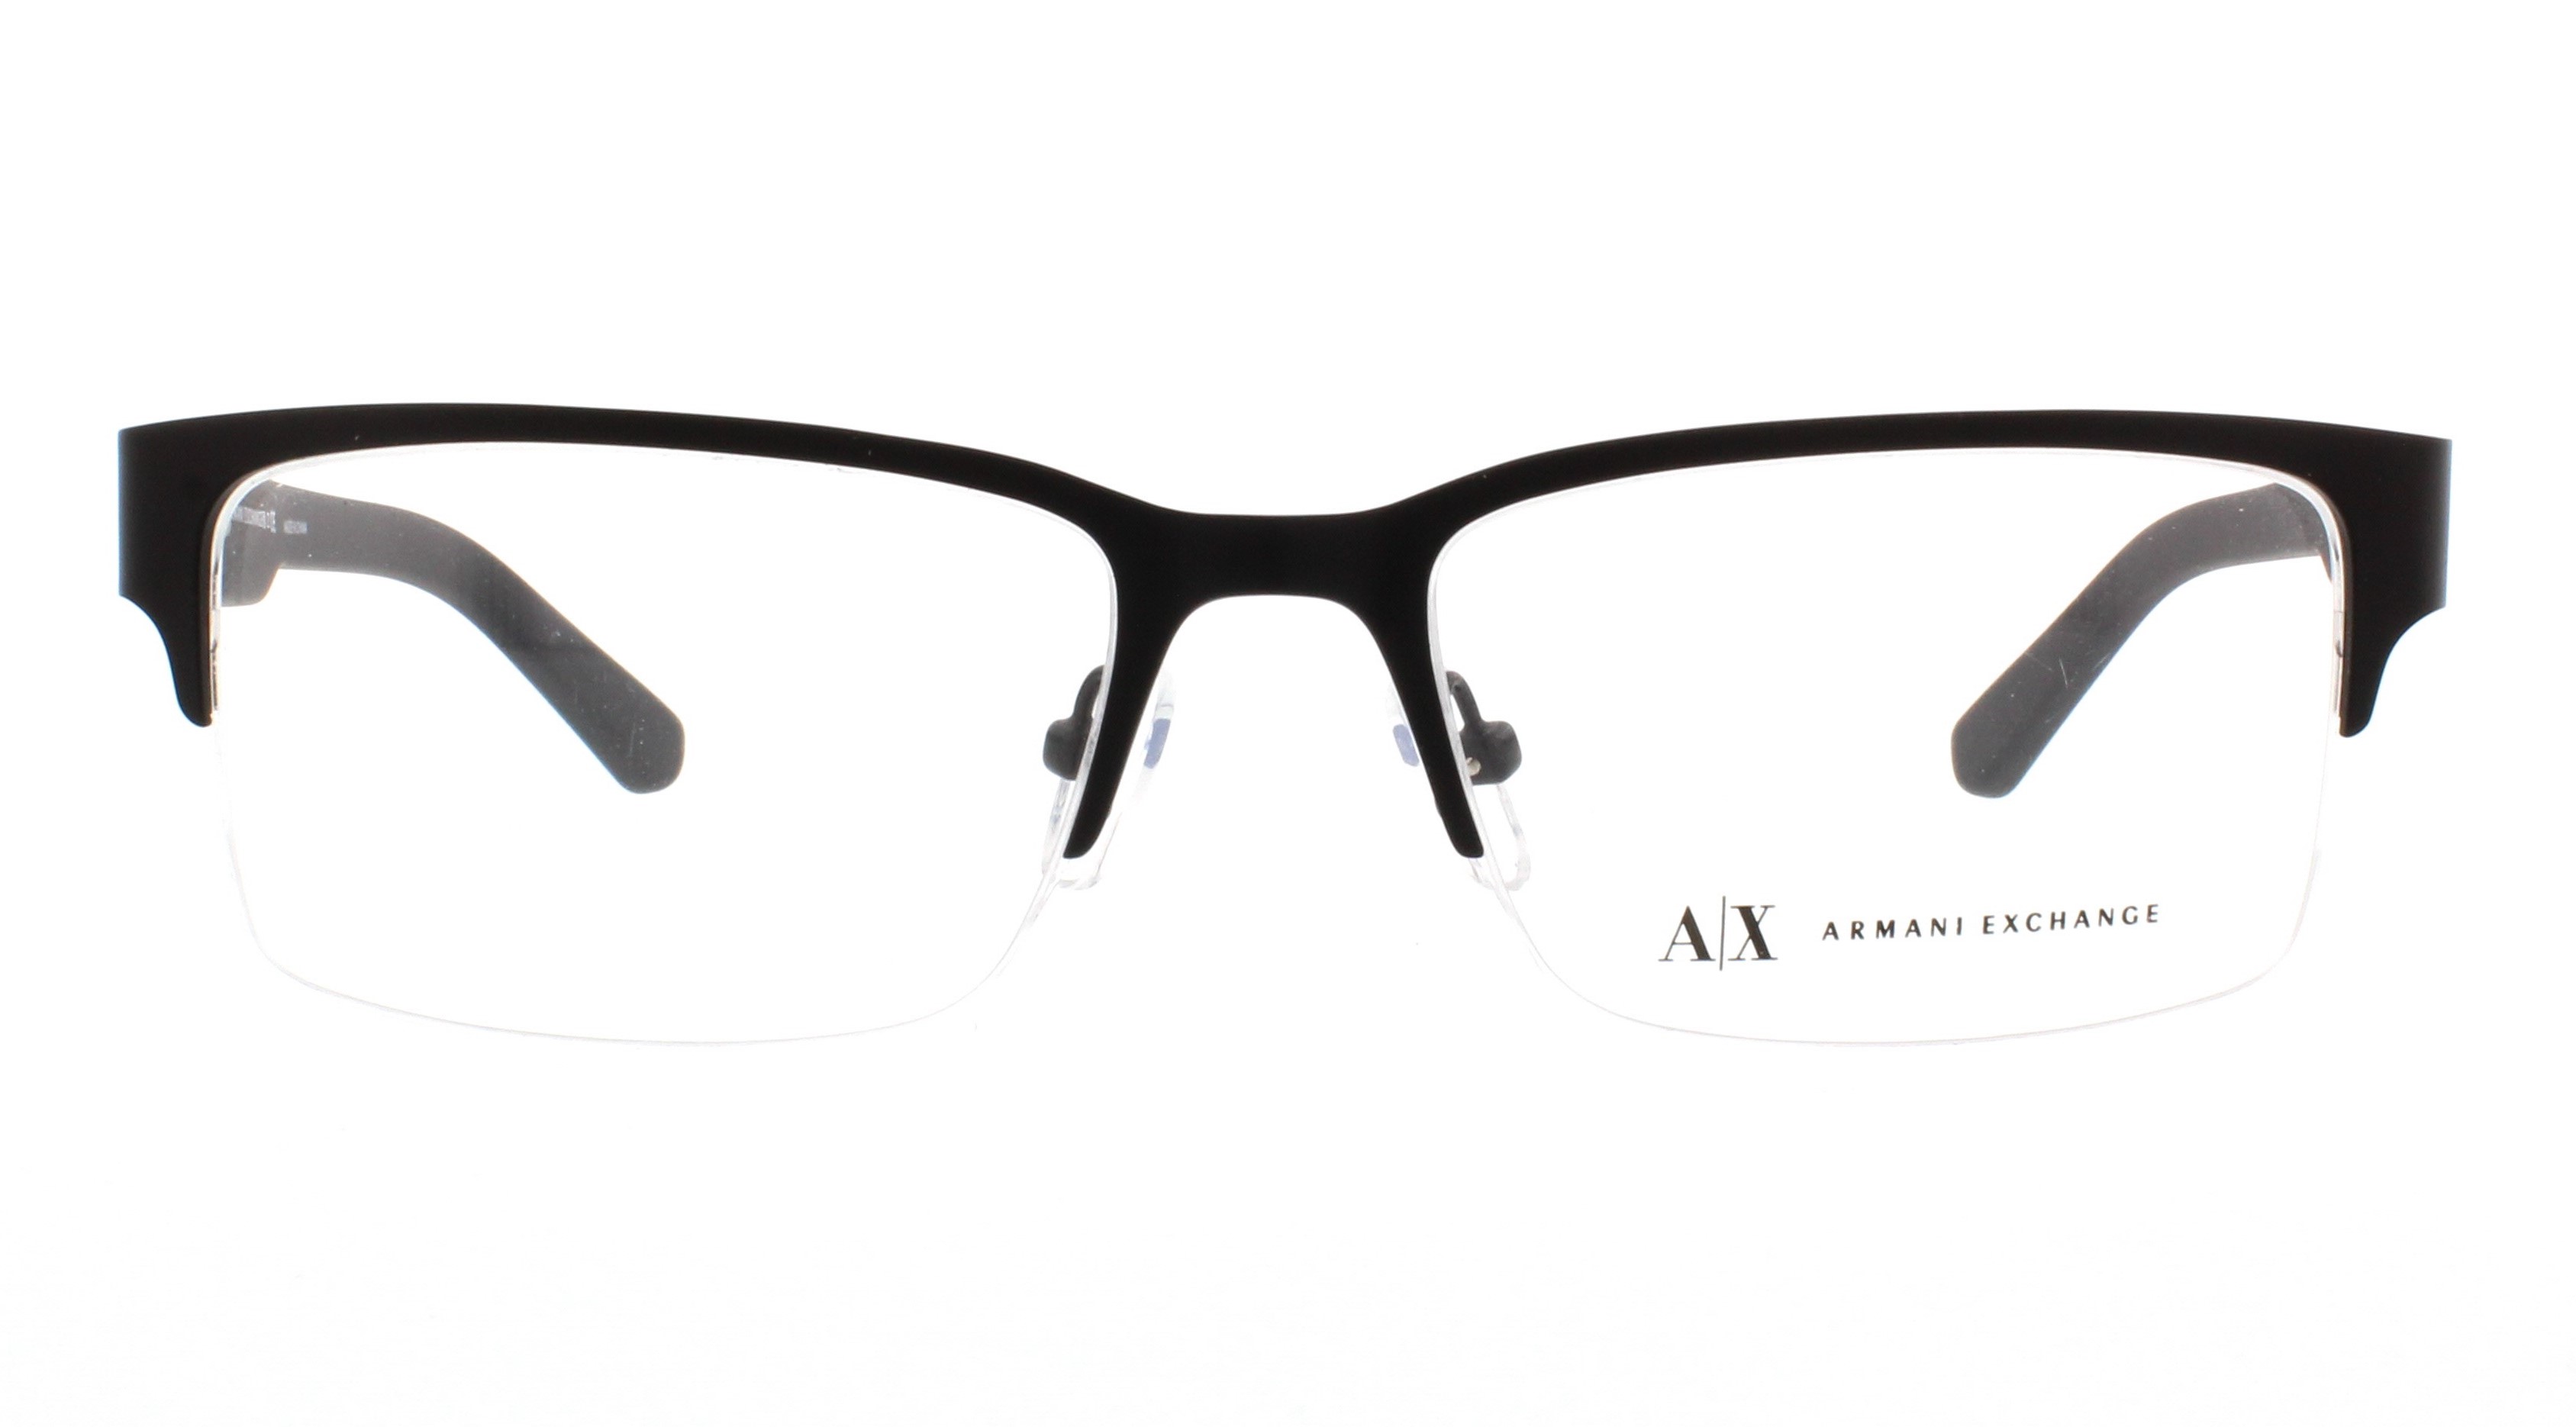 Outlet. Designer Eyeglasses Frames Exchange Armani AX1014